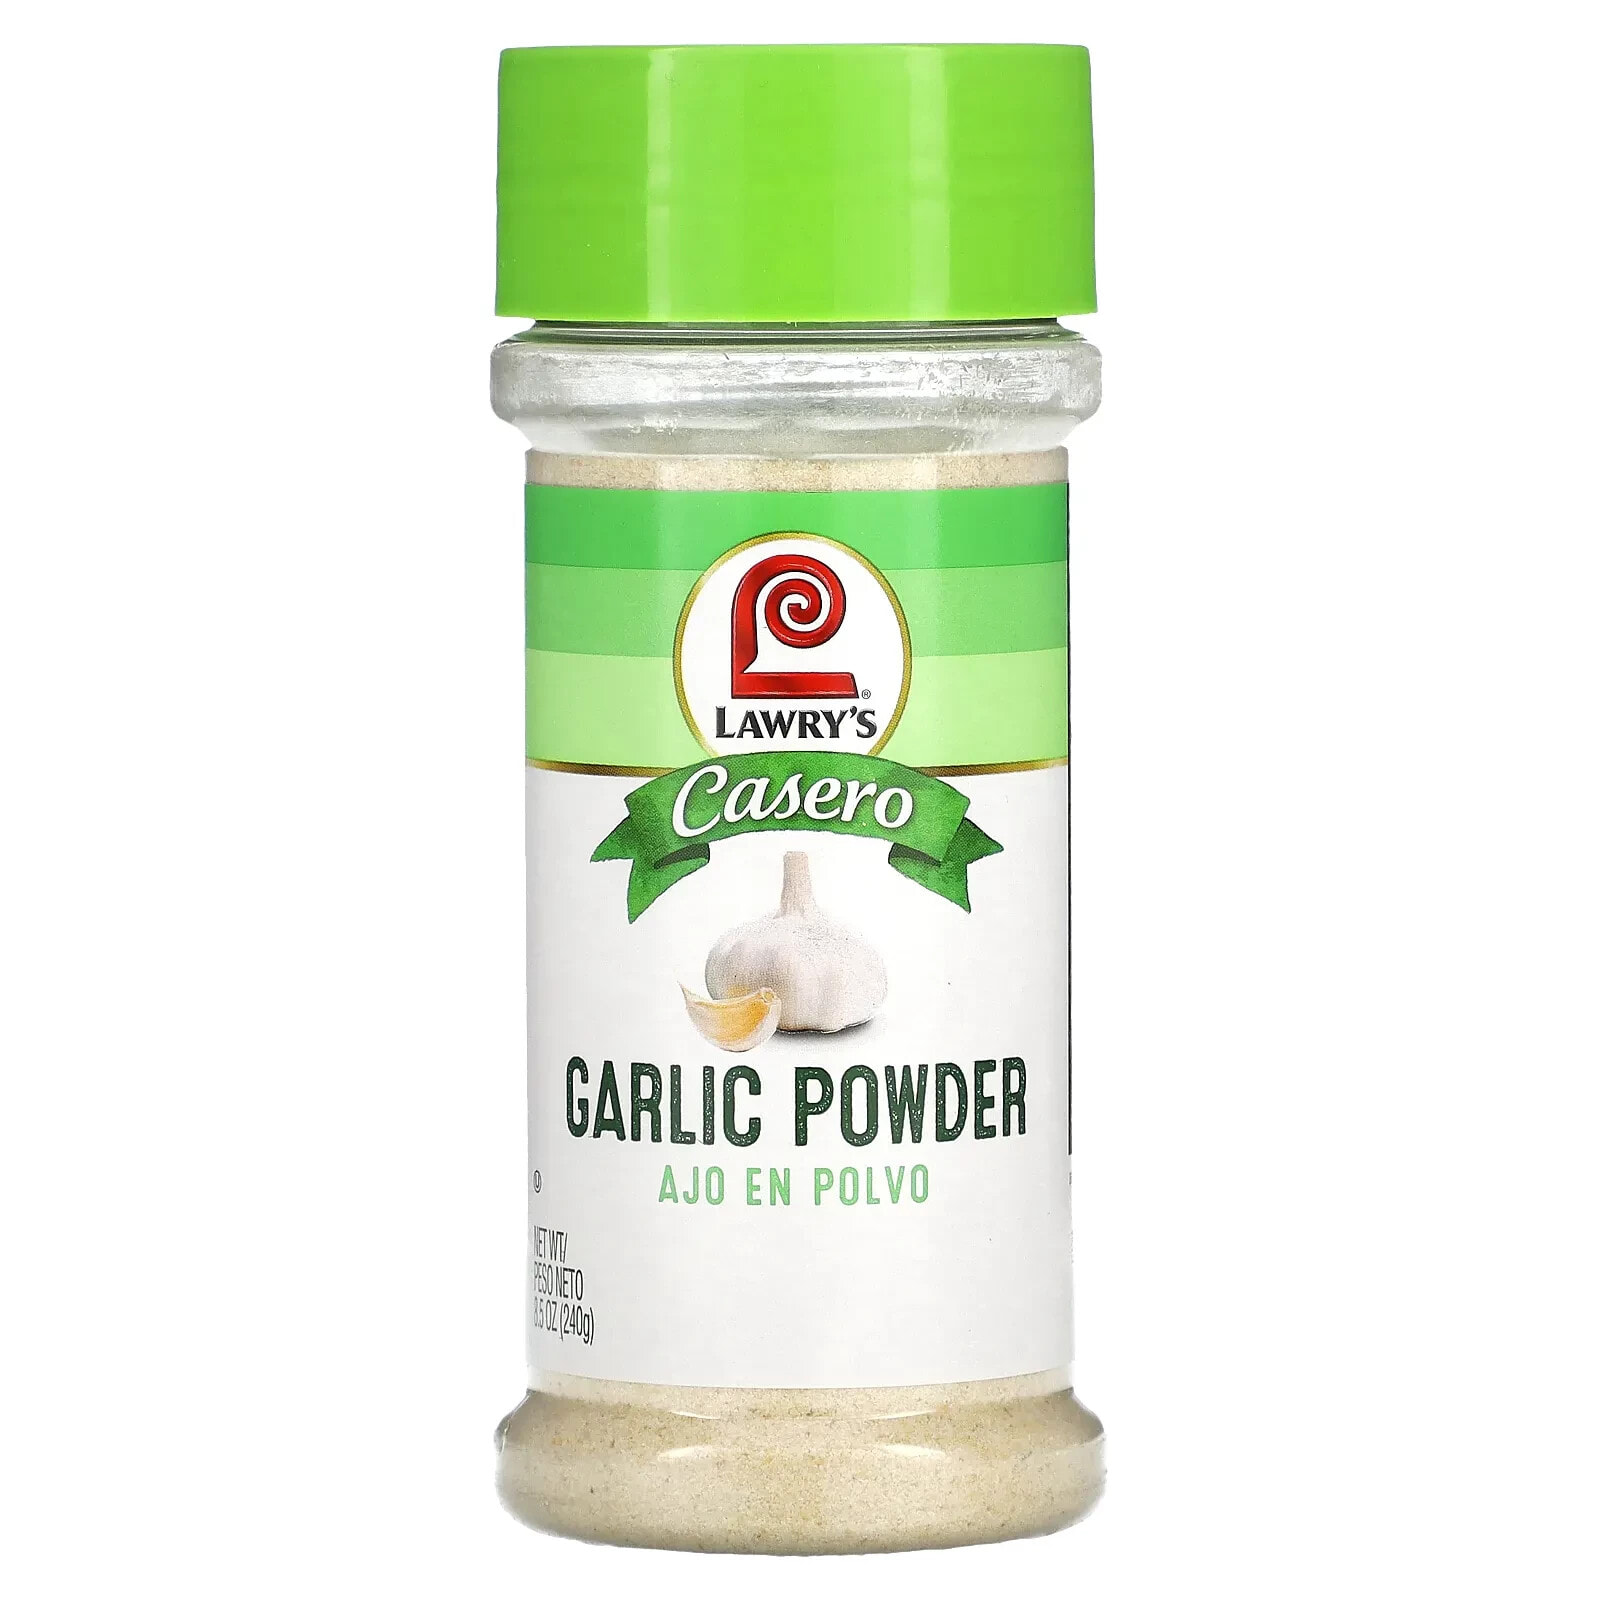 Casero, Garlic Powder, 8.5 oz (240 g)